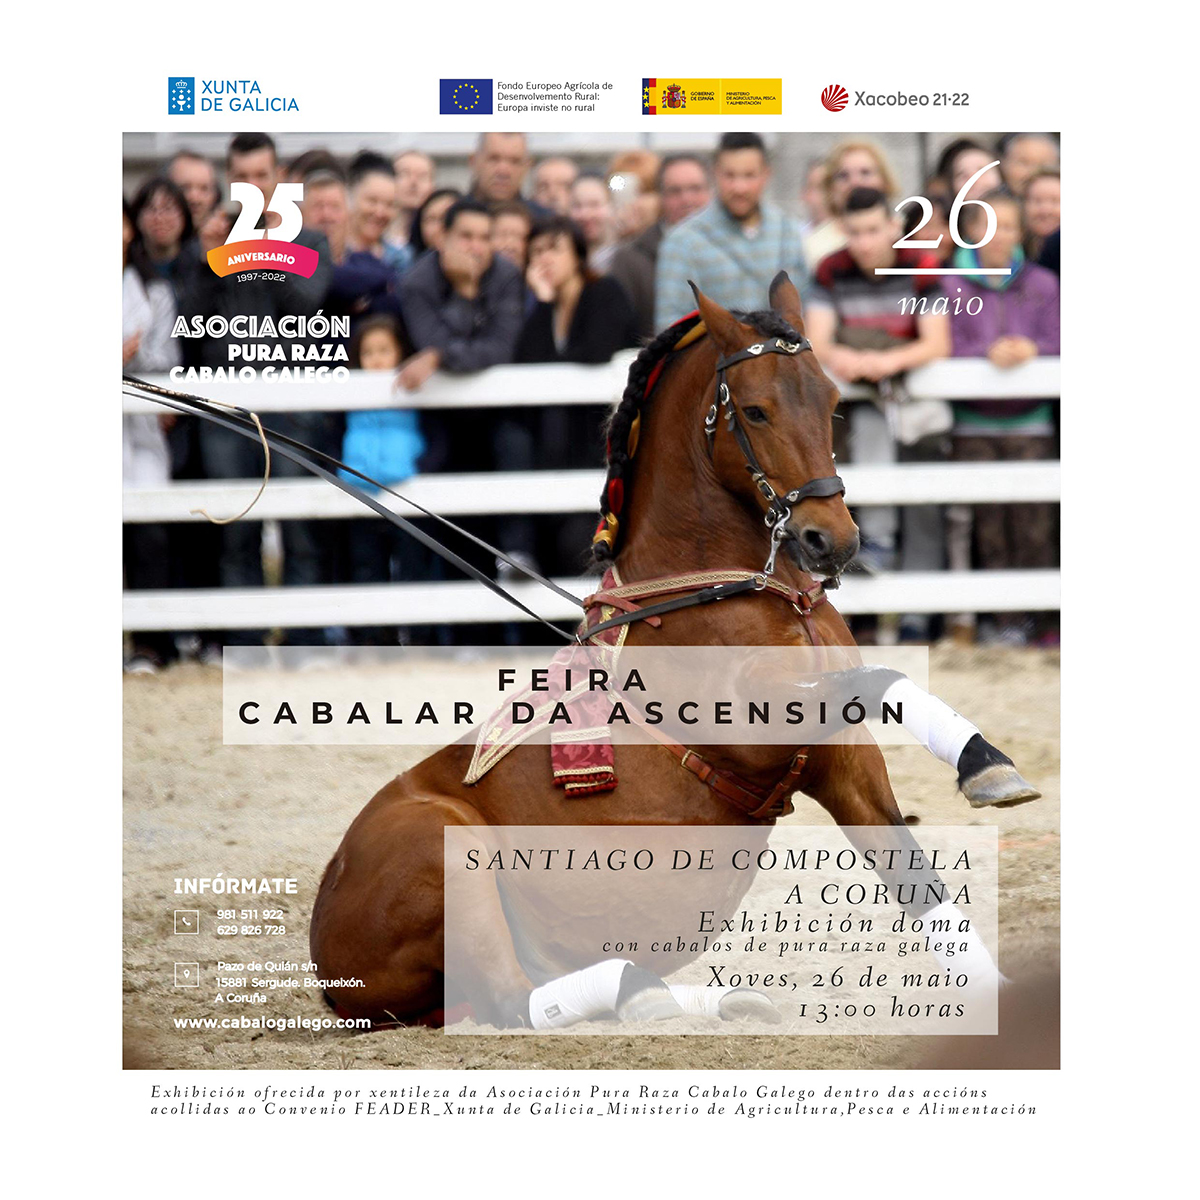 Exhibición de Doma con cabalos de pura raza galega Feira Cabalar da Ascensión. Santiago de Compostela. A Coruña